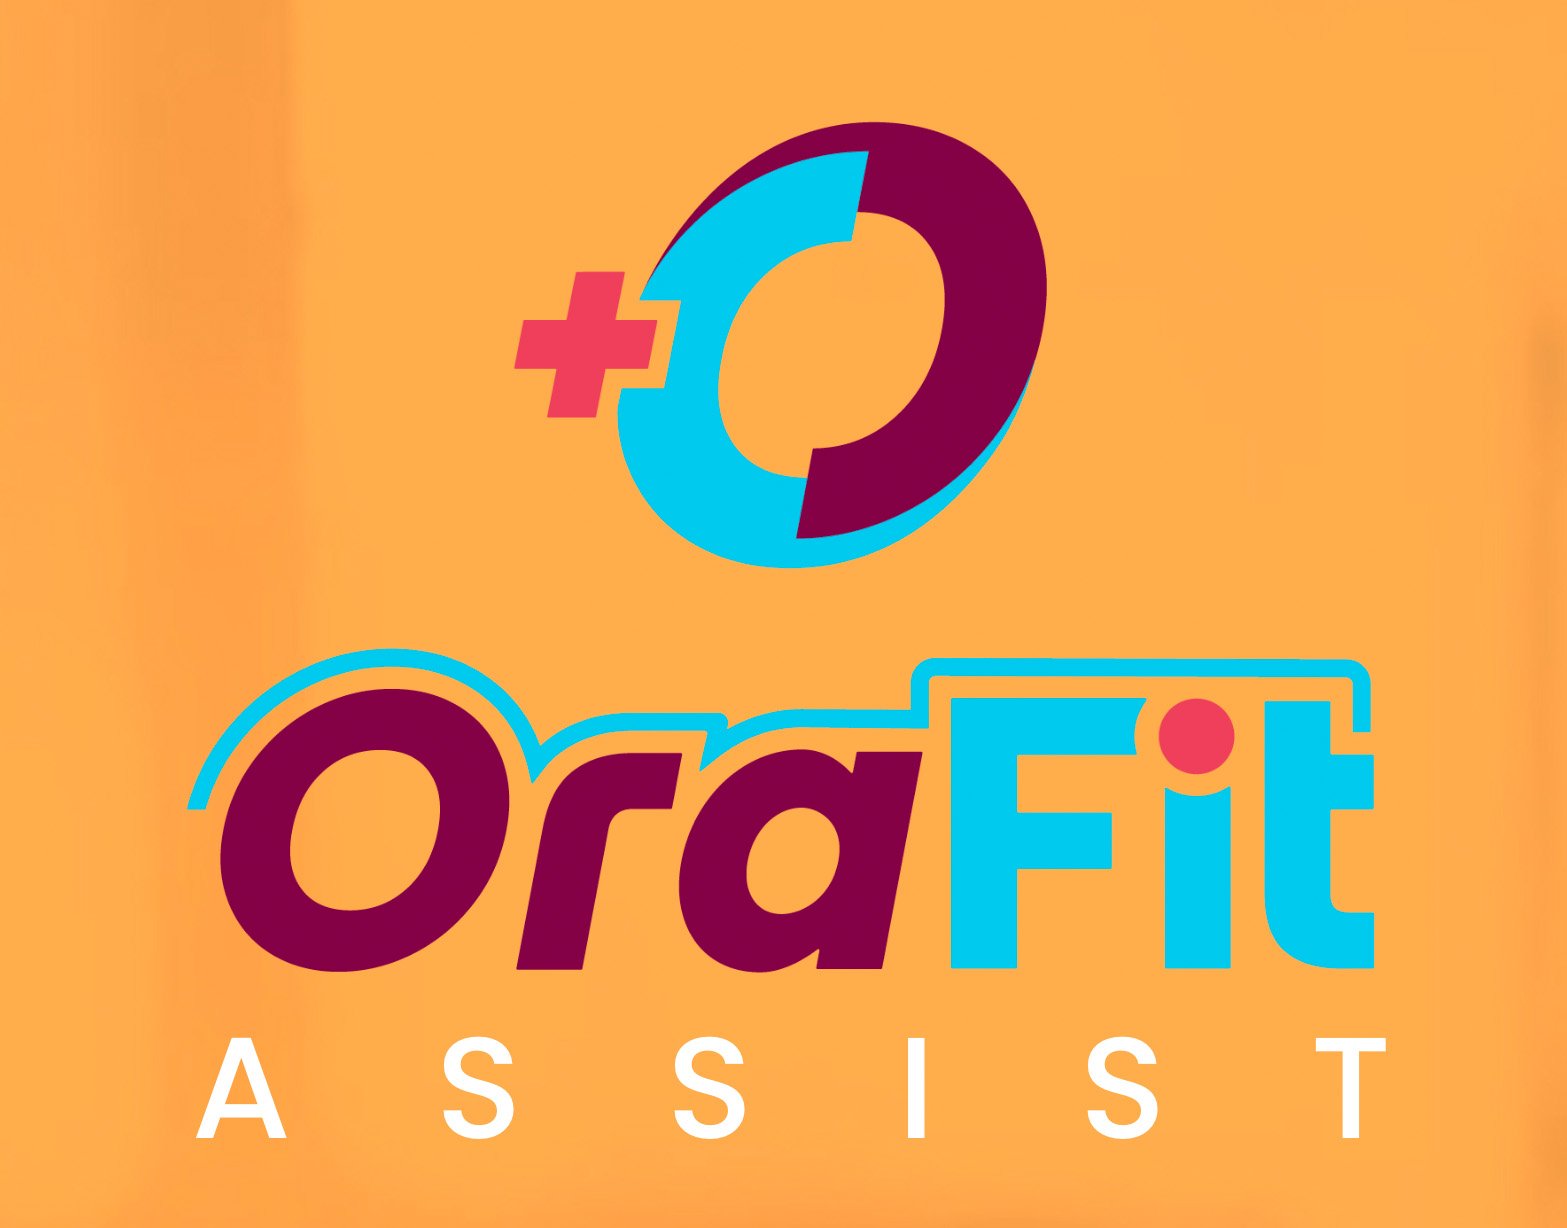 Orafit_Assist_logo.jpg